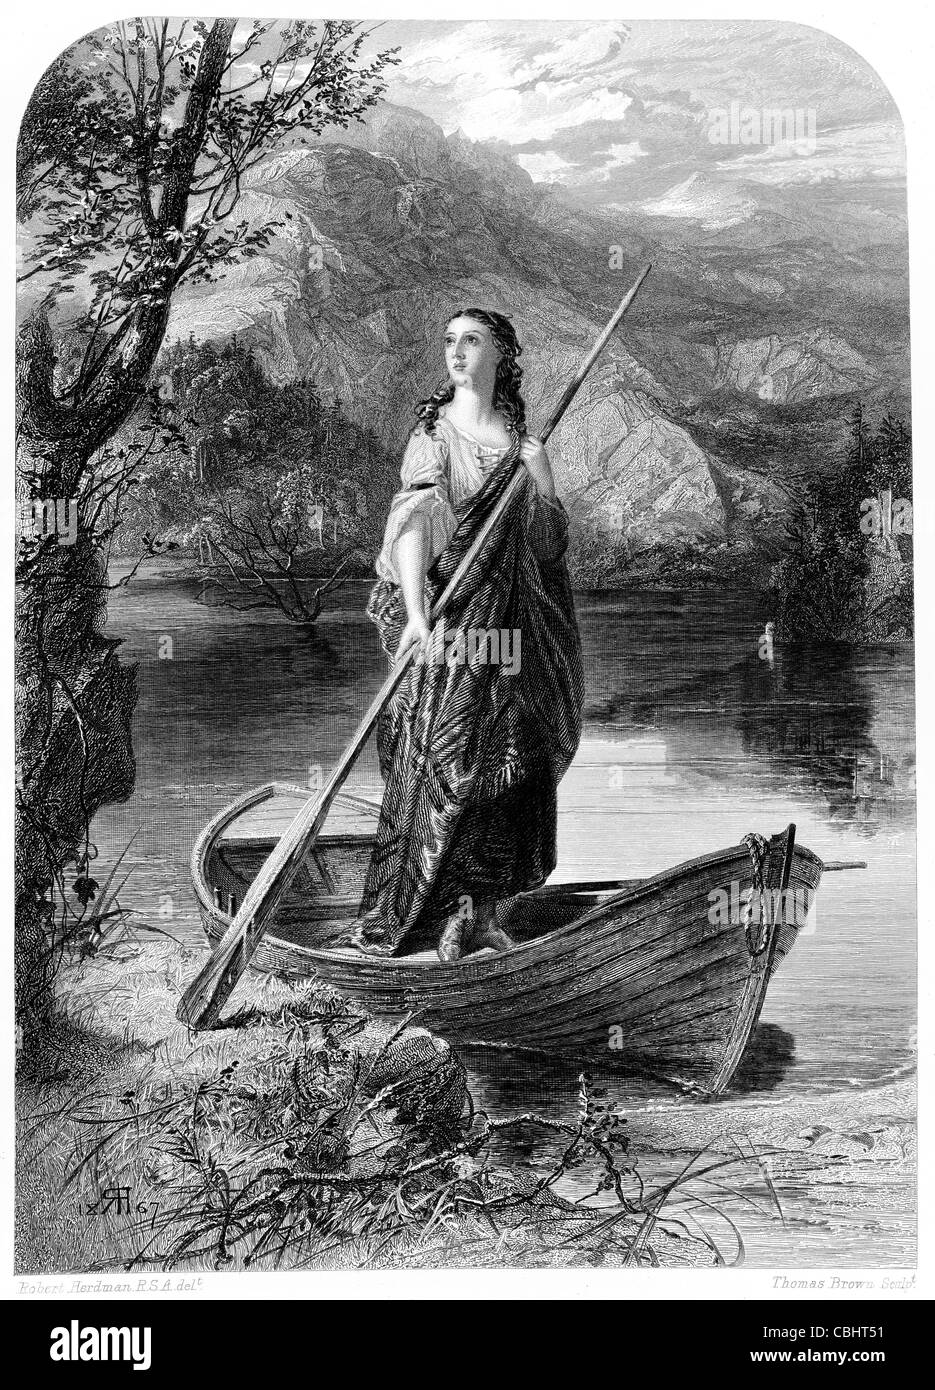 Signora del Lago arturiana Re Artù spada Excalibur barca a remi Merlin Lancelot mito Foto Stock